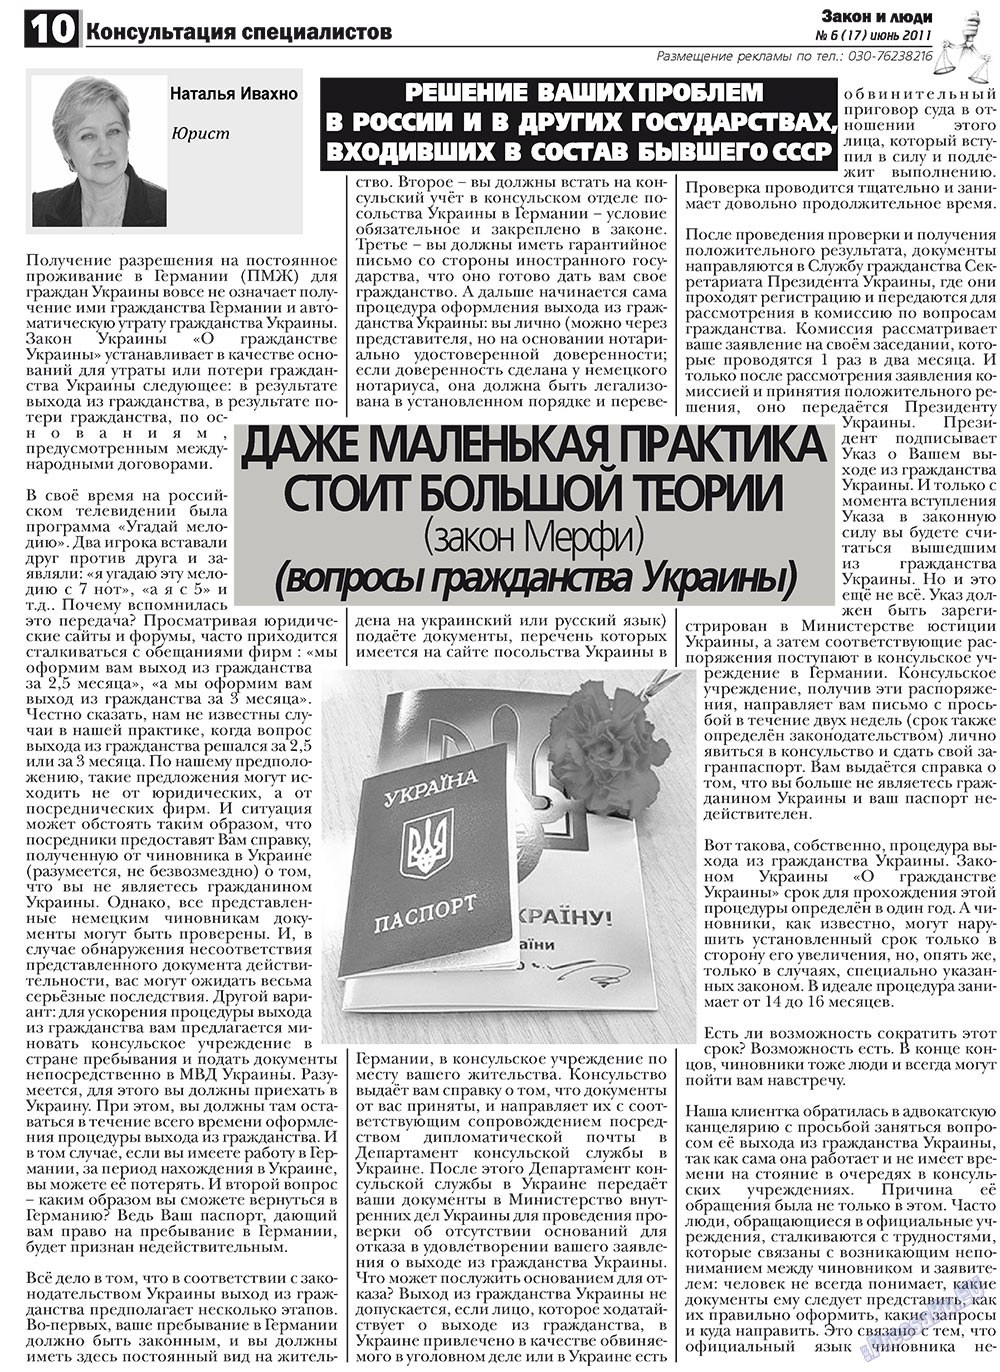 Закон и люди, газета. 2011 №6 стр.10